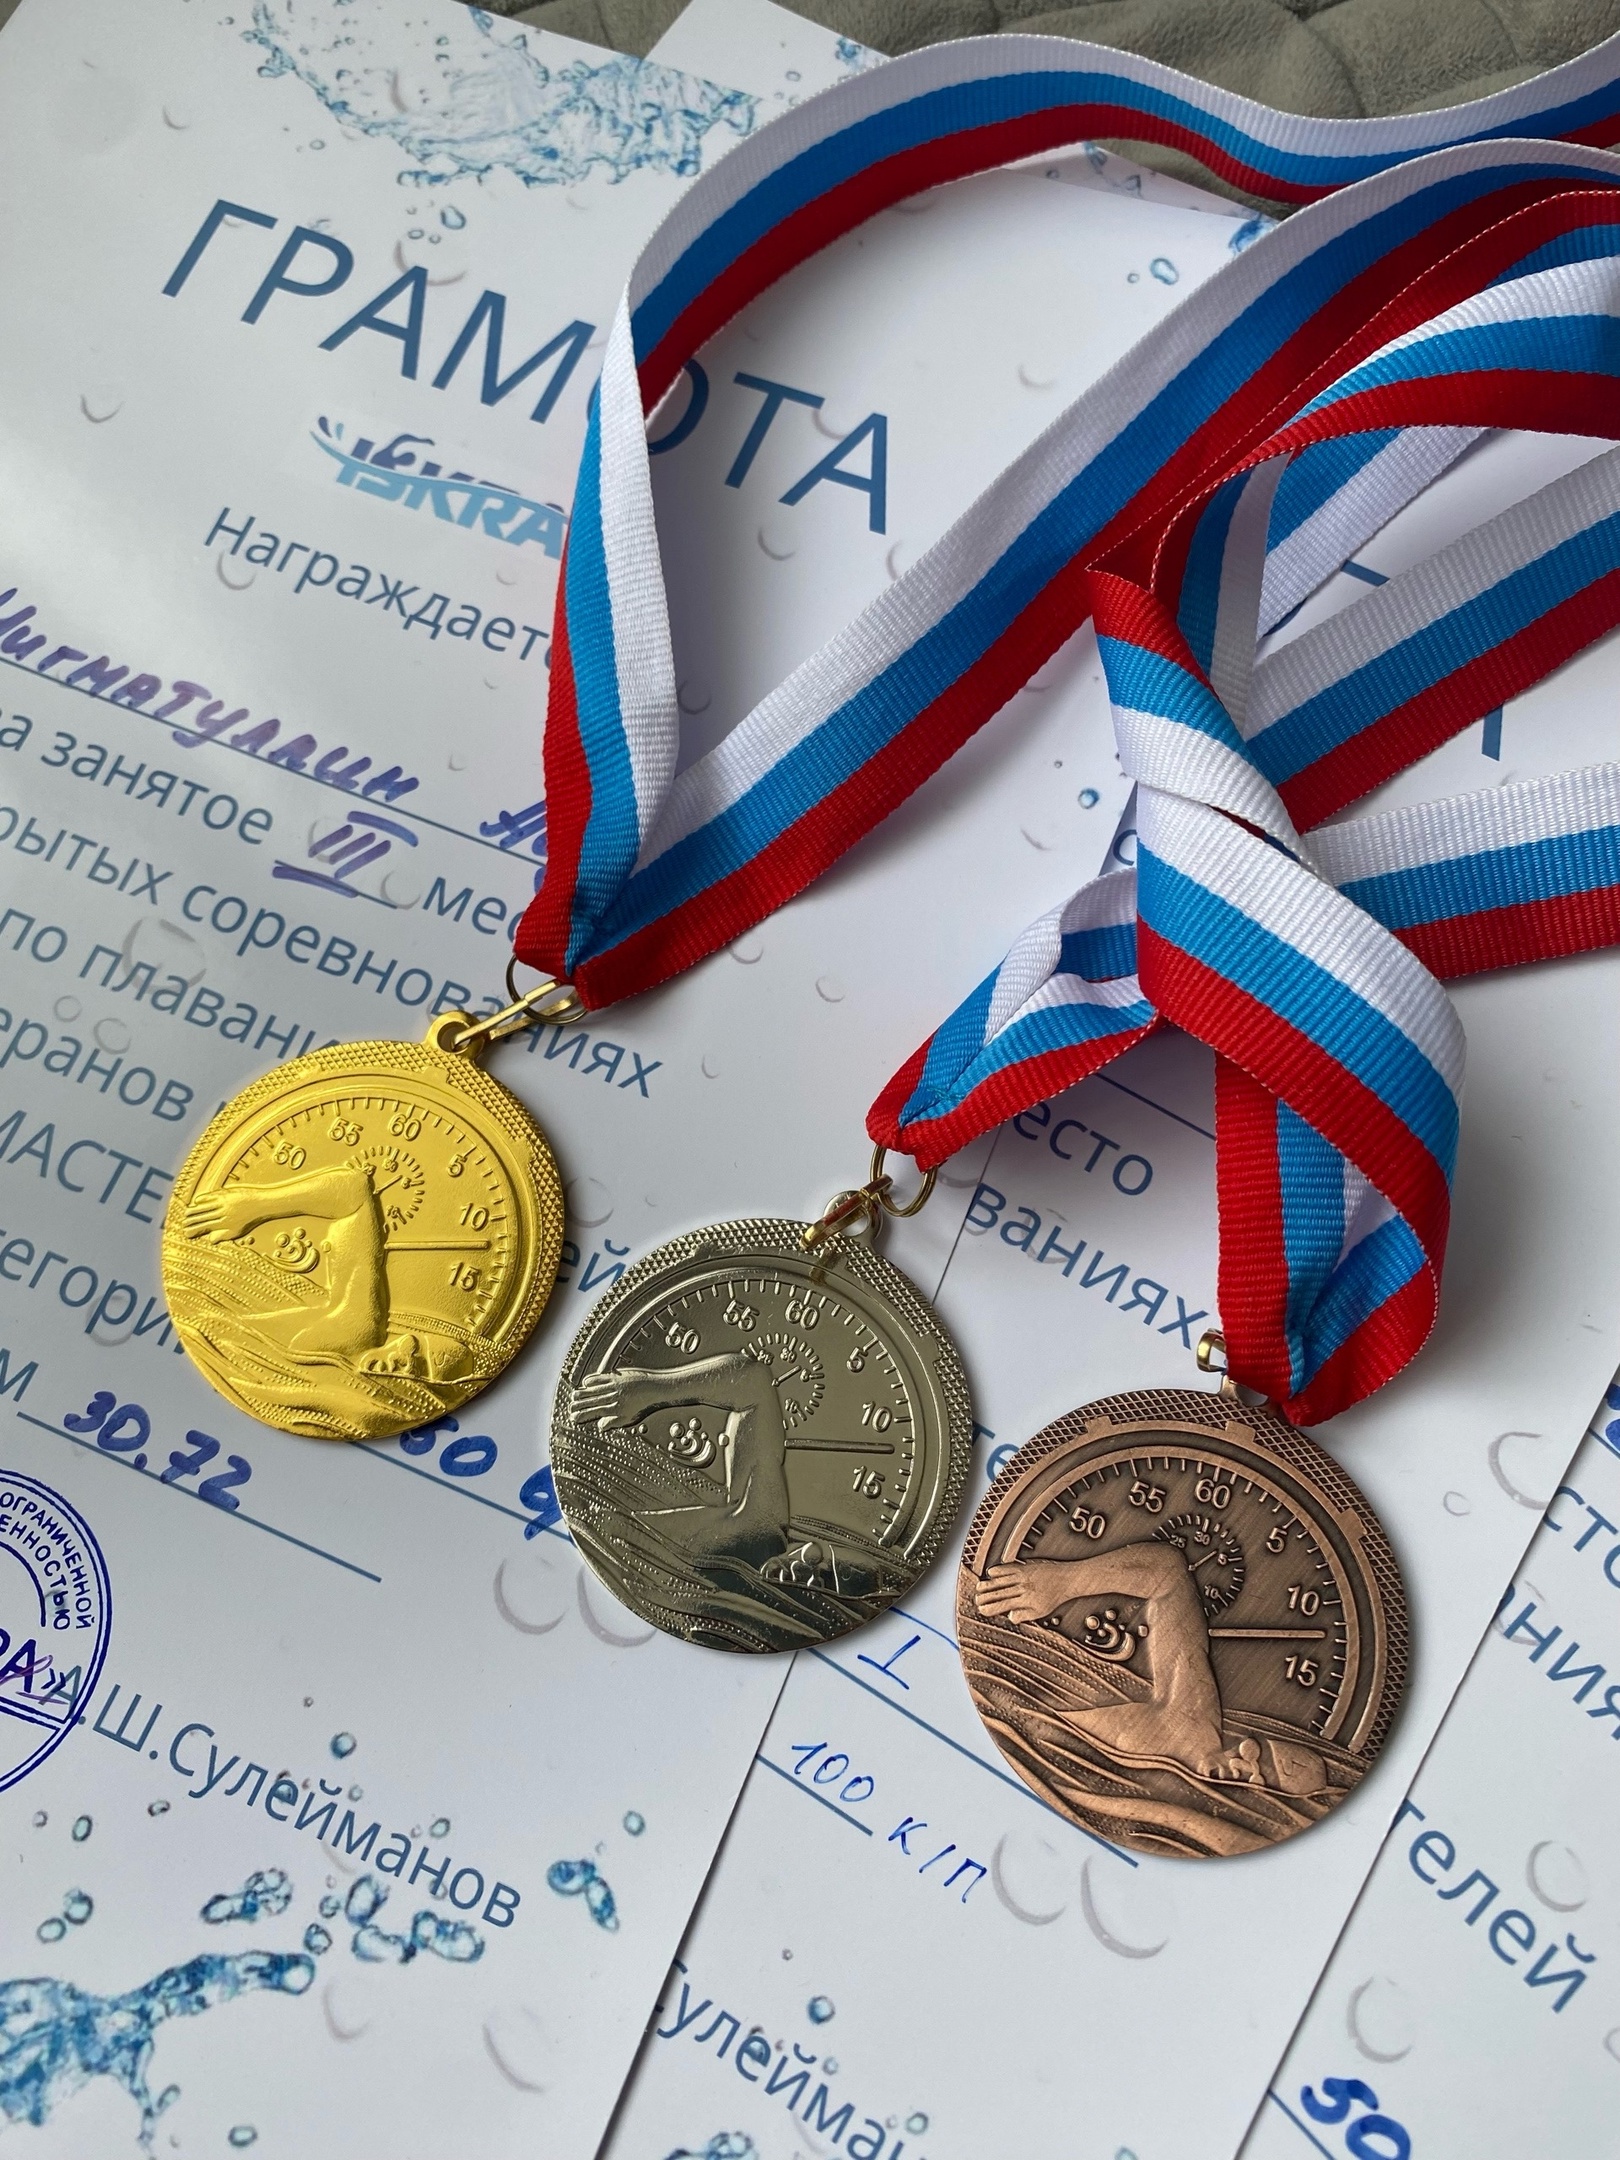  изображение для новости Взяли полный комплект медалей на соревнованиях "Мастерс"!